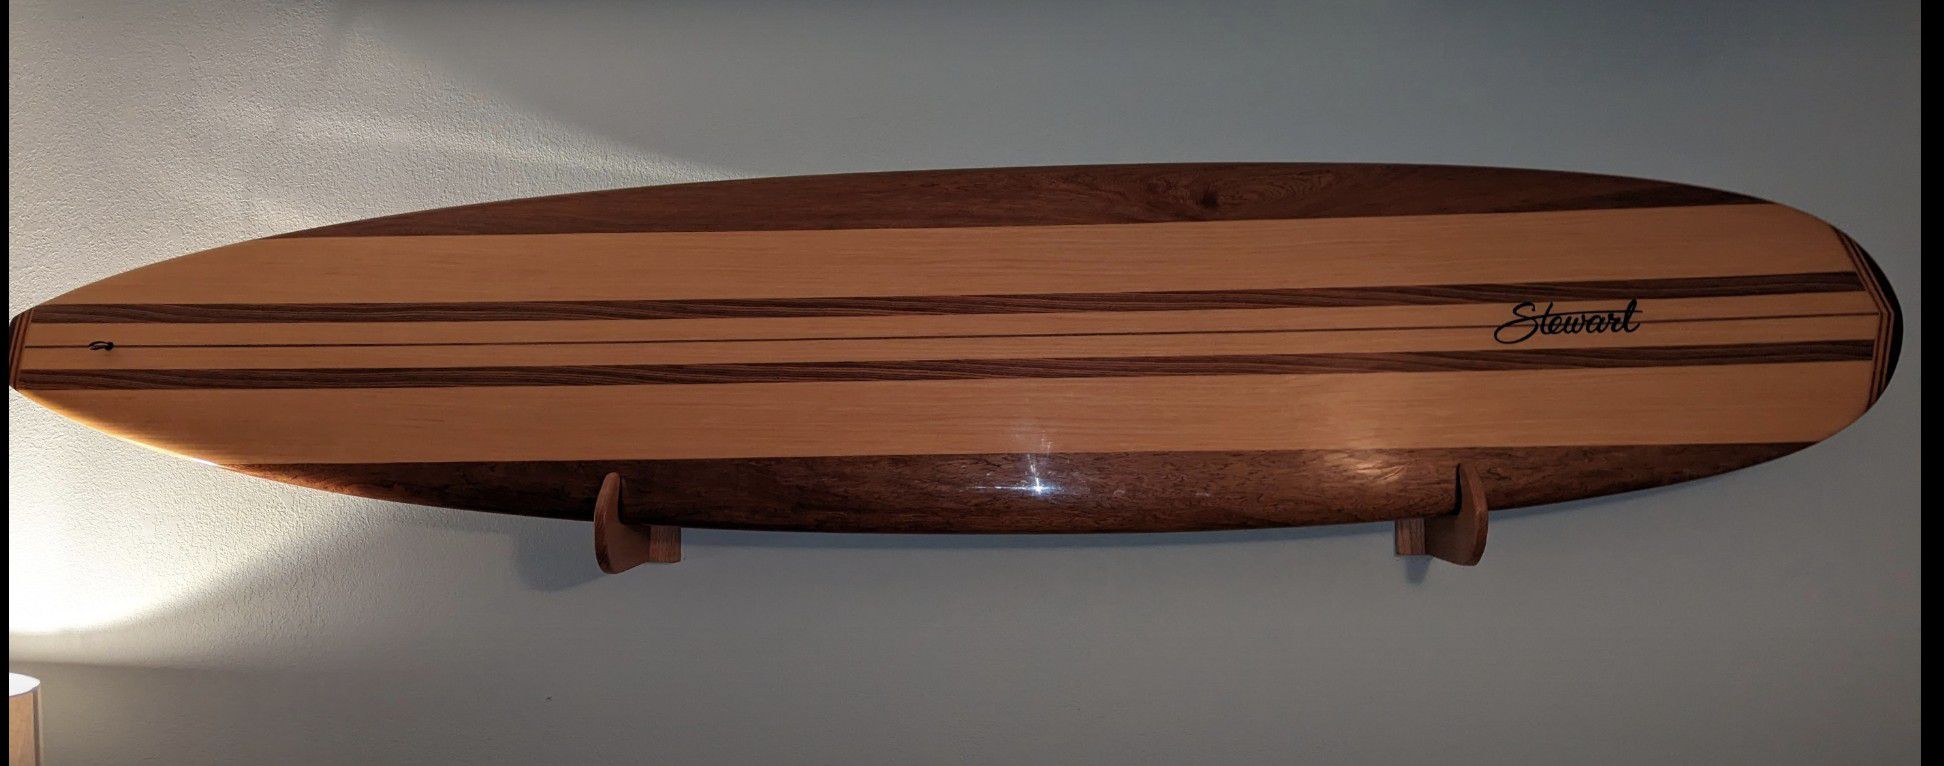 9'0 Stewart Hotrod Longboard 